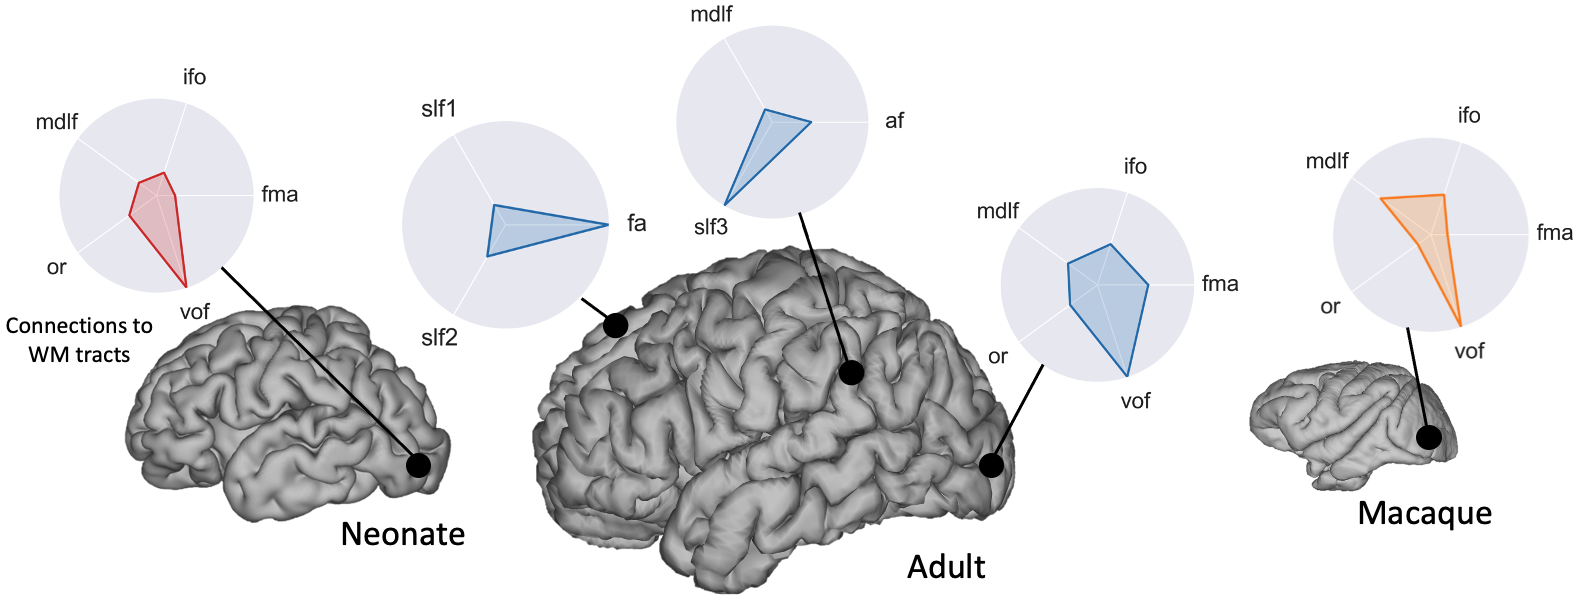 Connectivity across diverse brains